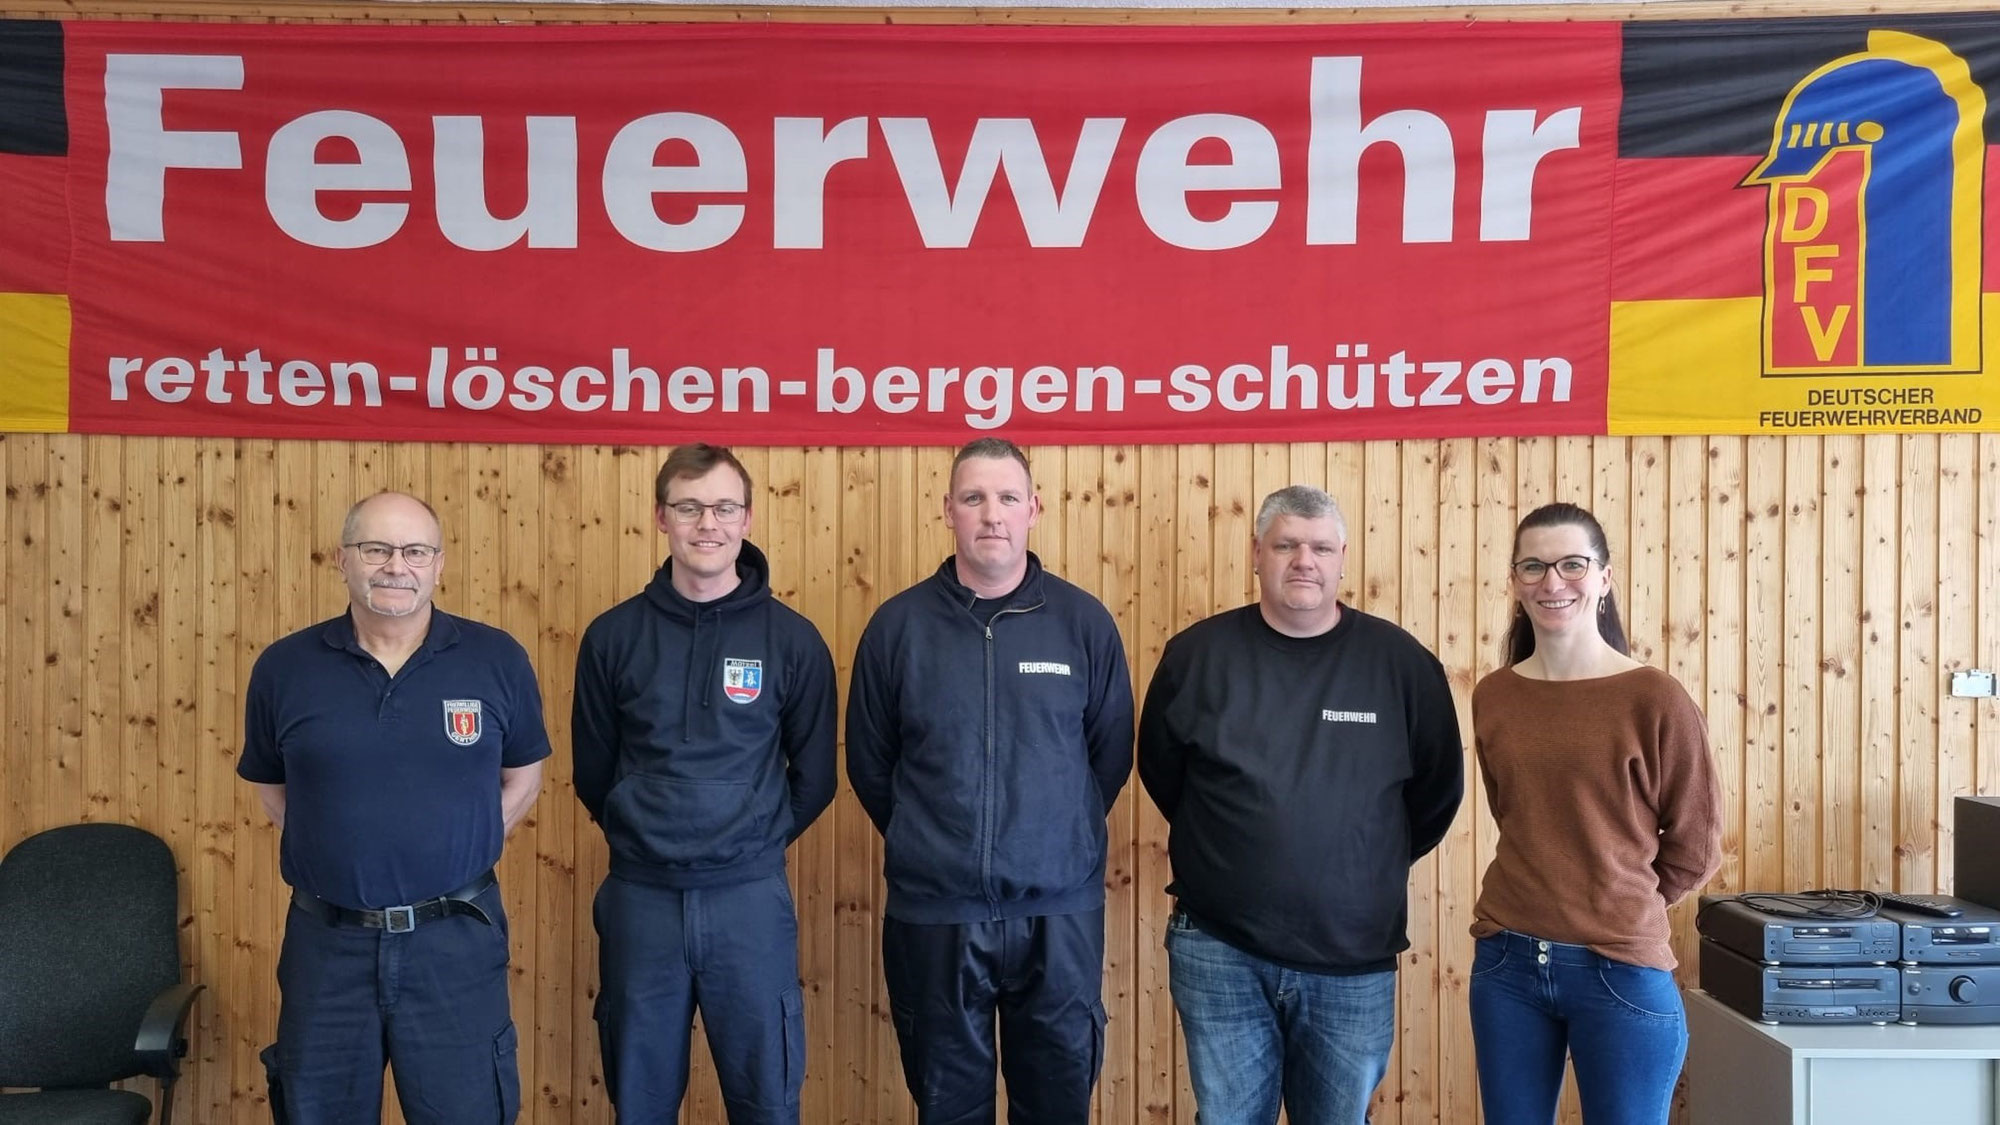 Feuerwehr-Generationswechsel: Christian Giese wird der neue Chef